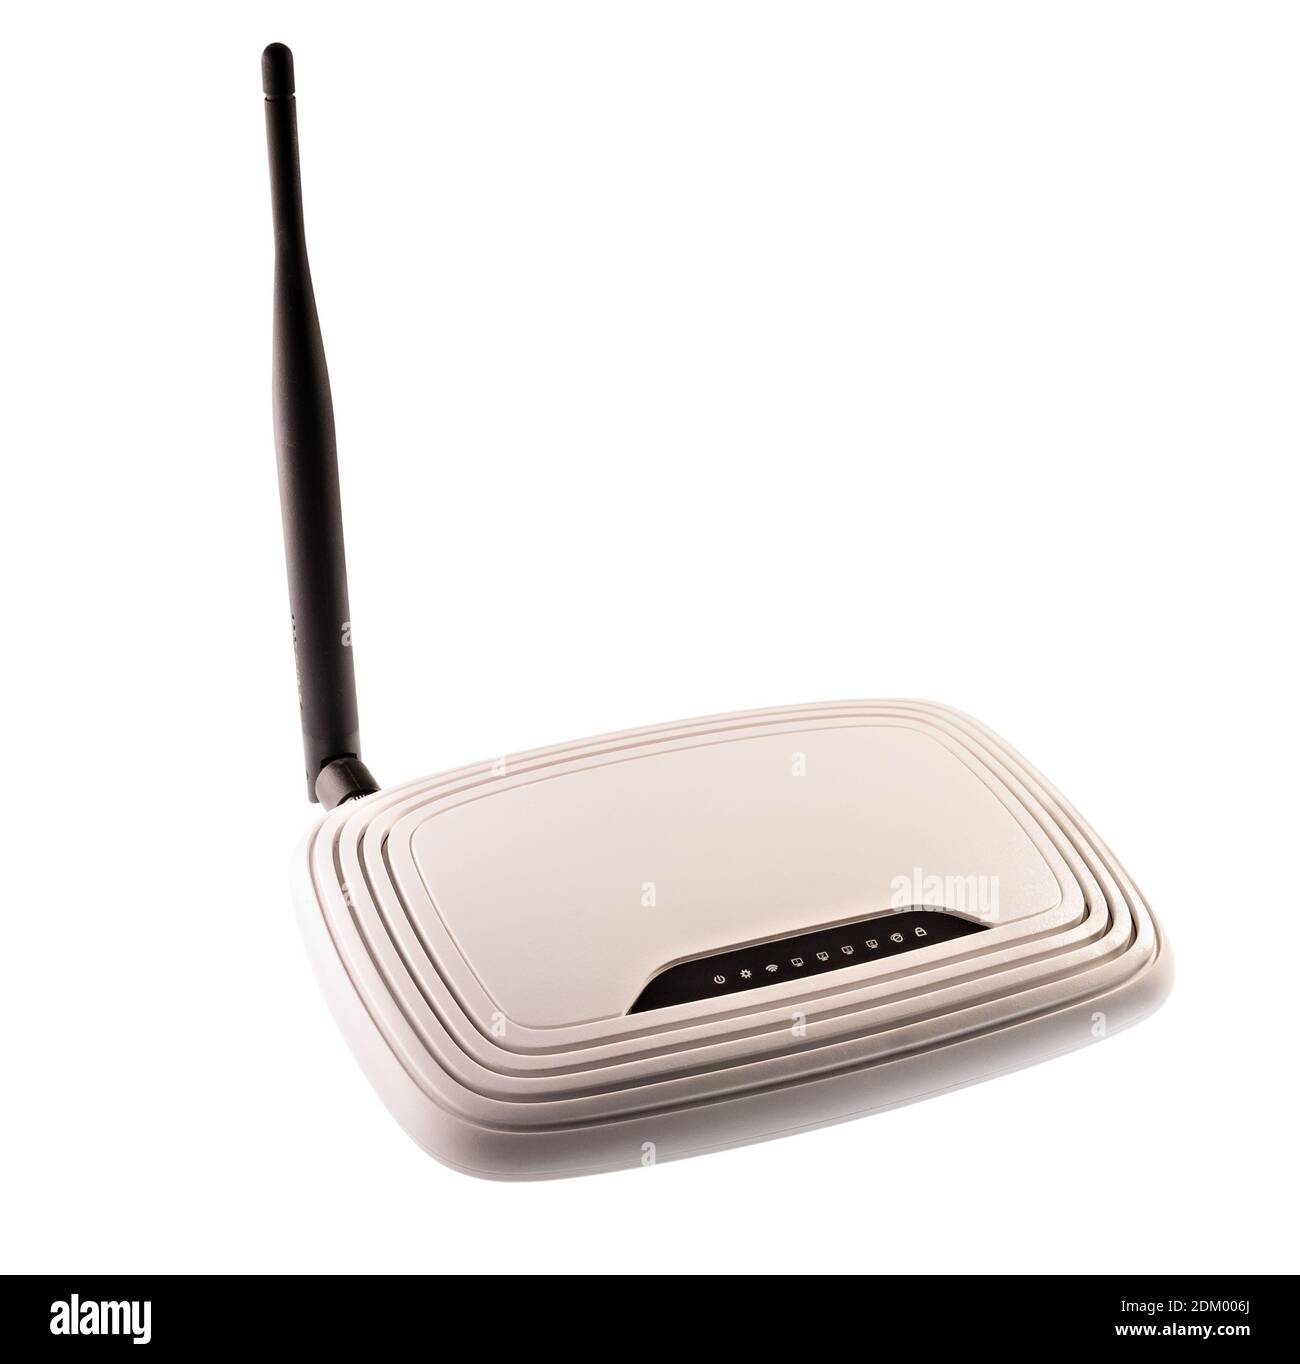 Router Wi fi isolato su sfondo bianco (tutti i logo, le iscrizioni e i contrassegni rimossi) Foto Stock